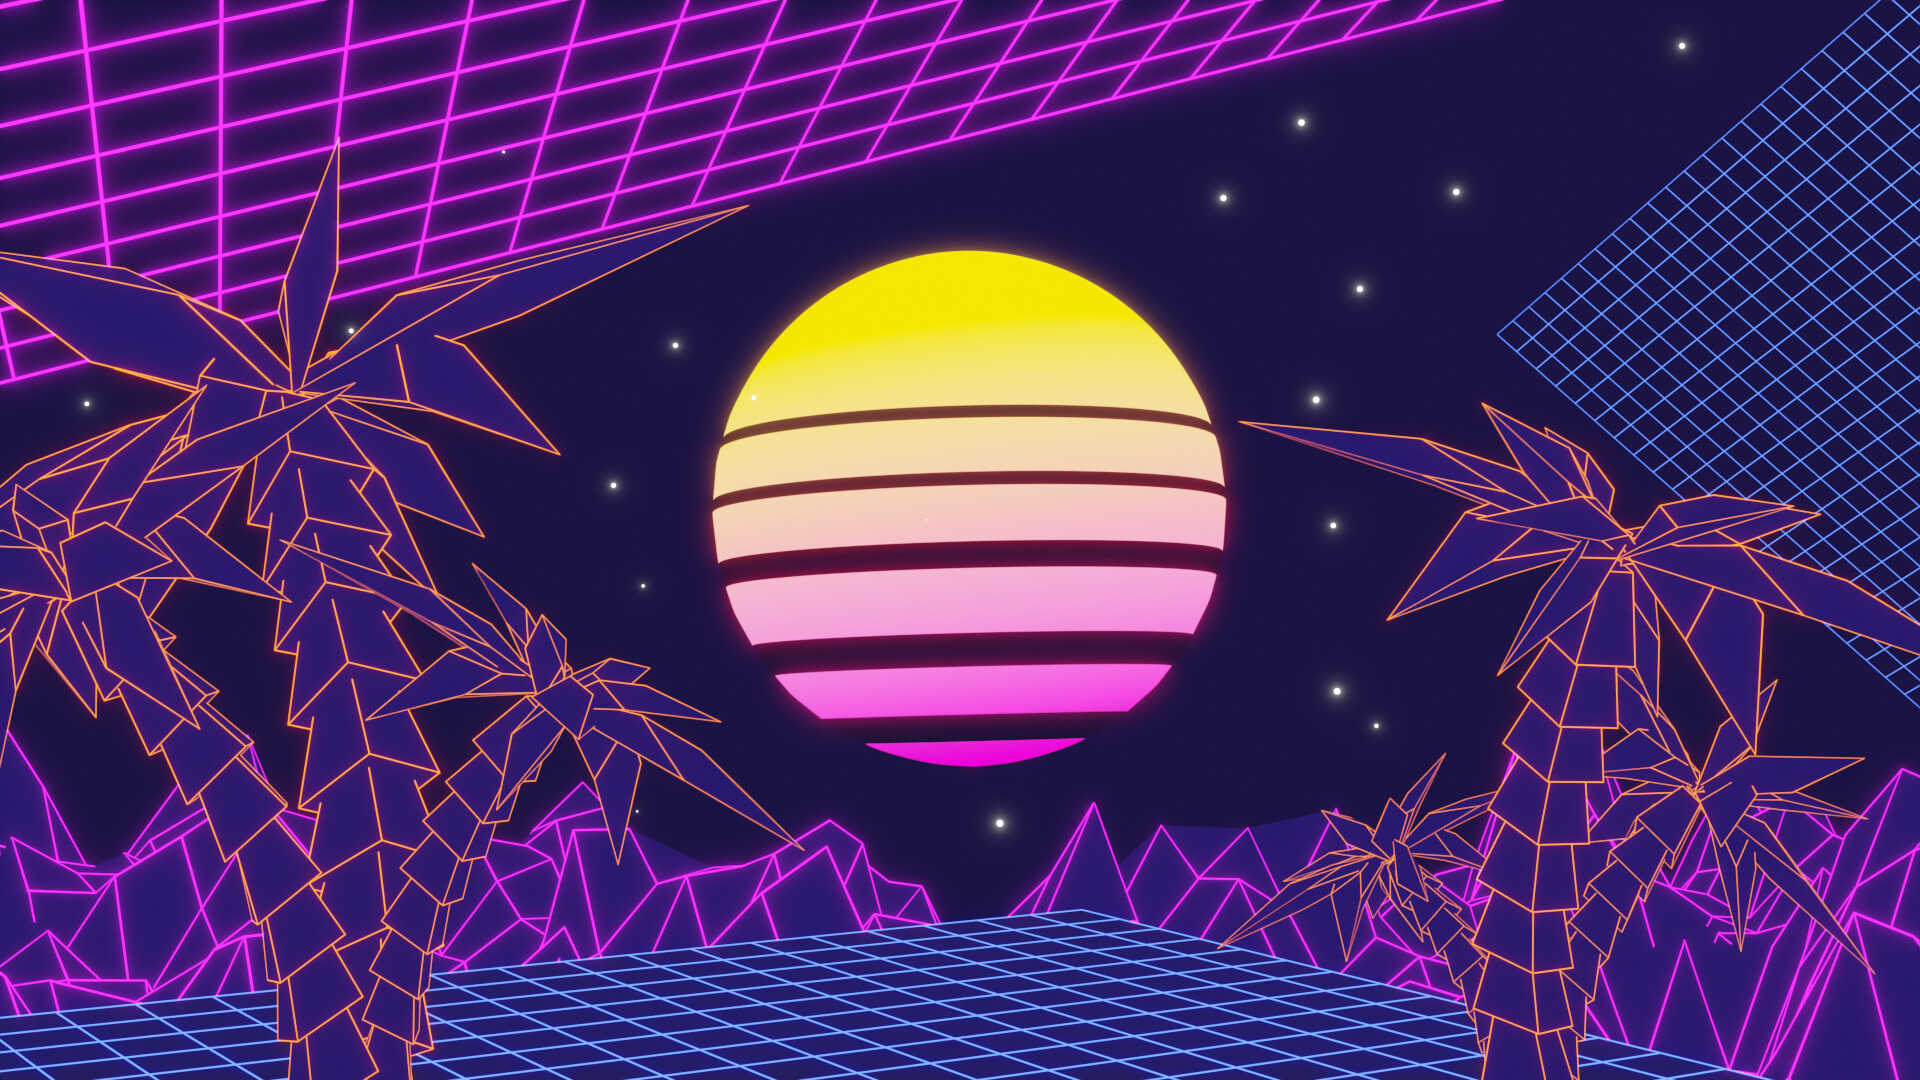 ArtStation - Vaporwave Background